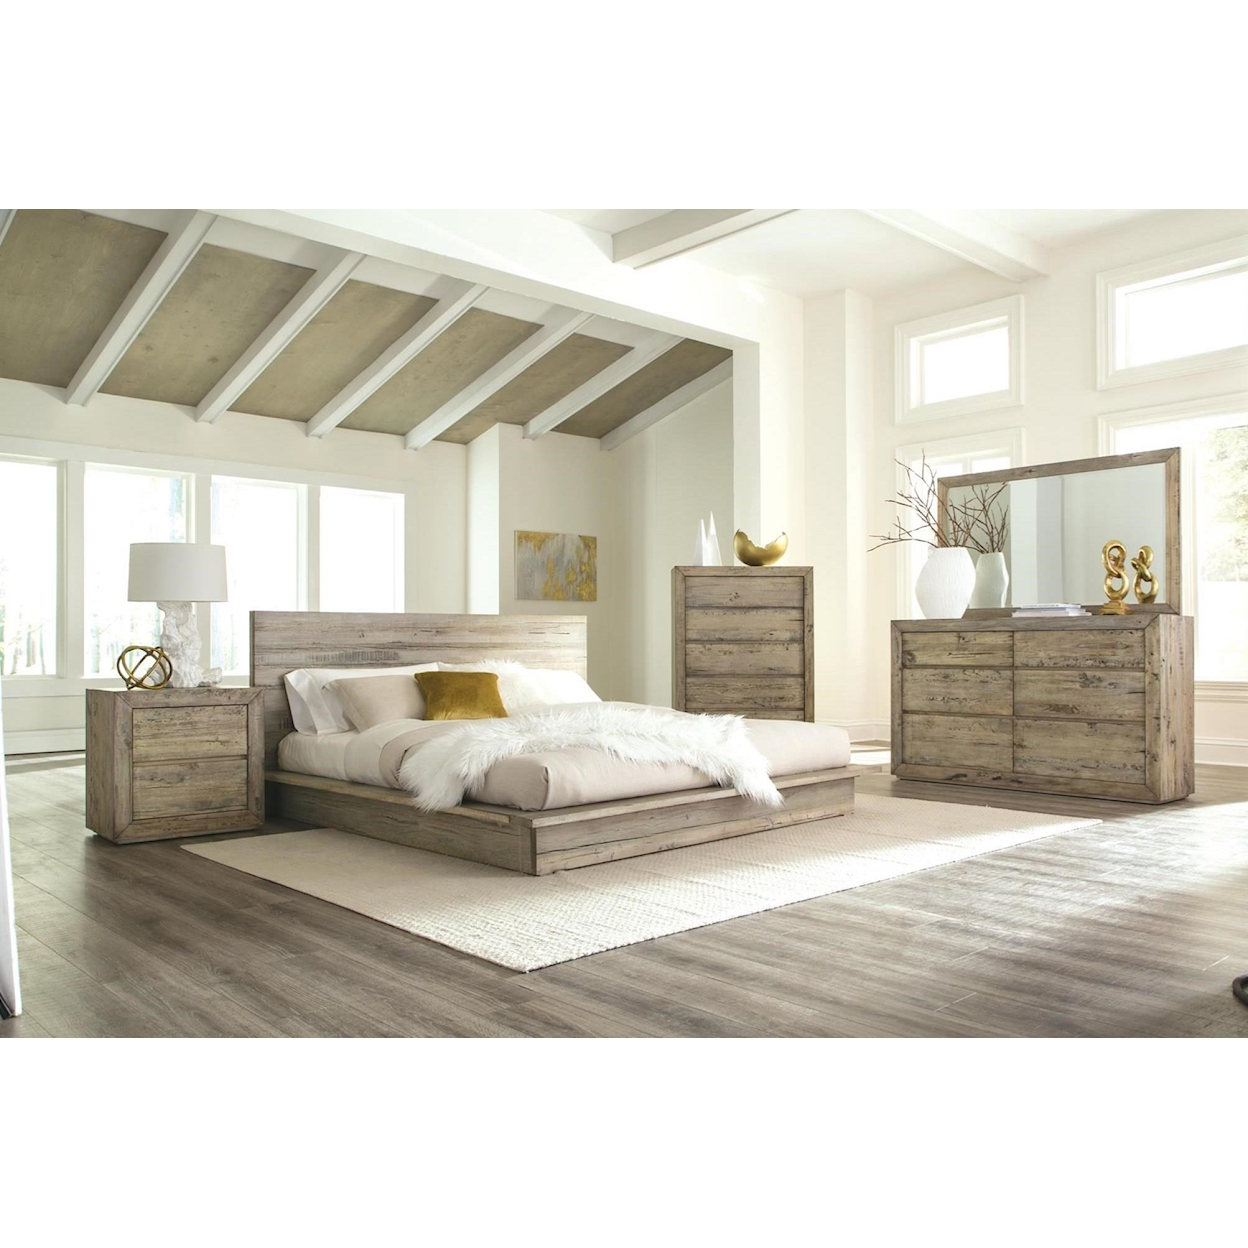 Napa Furniture Design Renewal King Bed